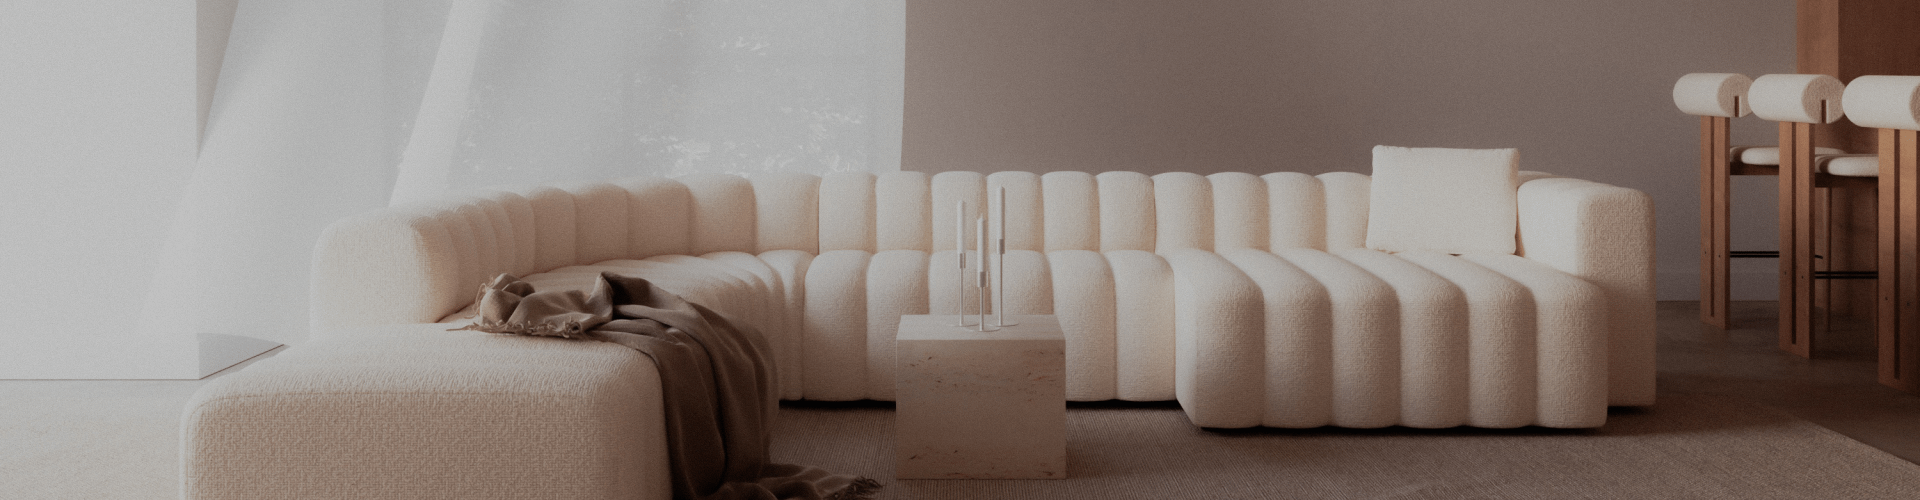 Een witte bank in een fel verlichte kamer met omringende design meubels.